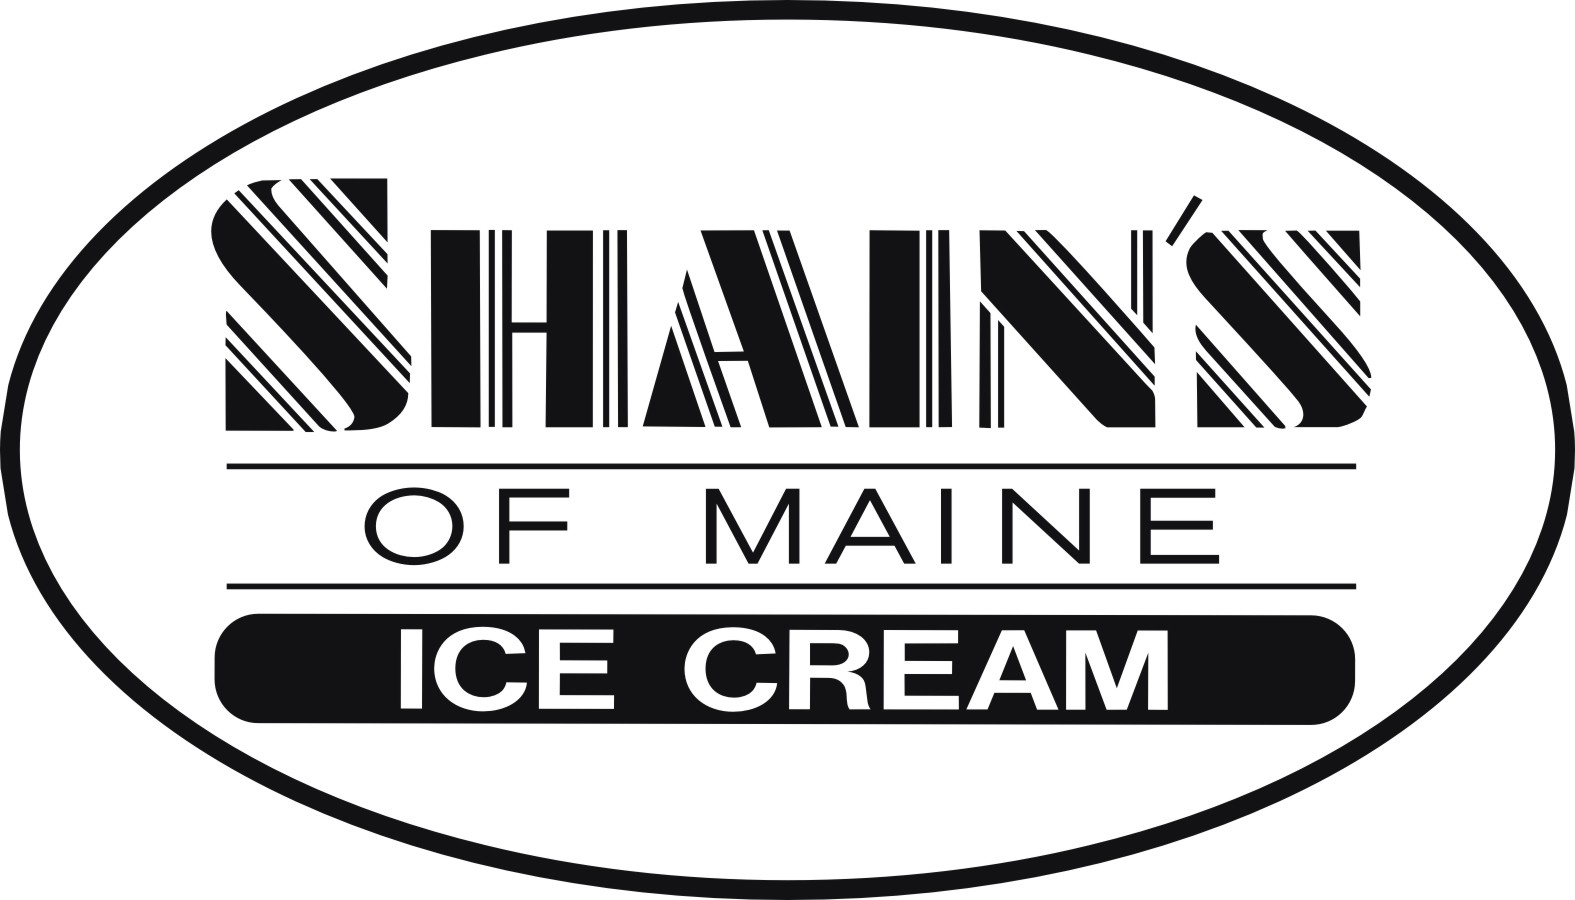 Shain’s of Maine